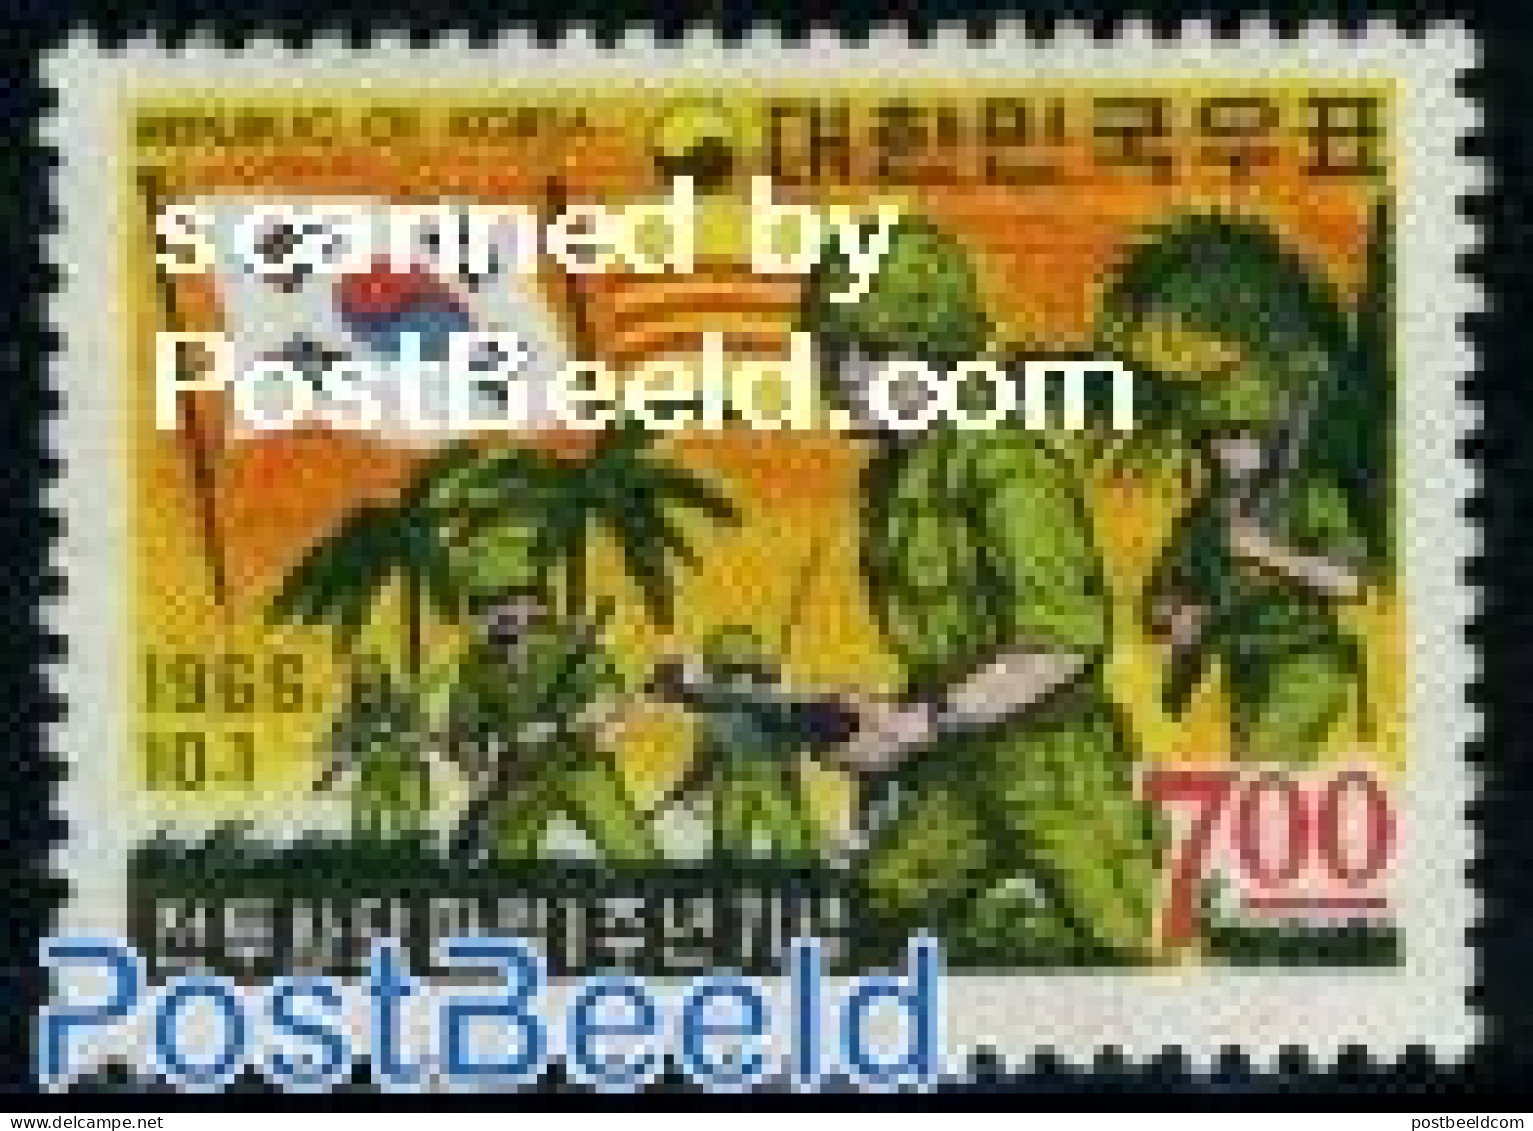 Korea, South 1966 Vietnam Troops 1v, Mint NH, History - Flags - Militarism - Militaria